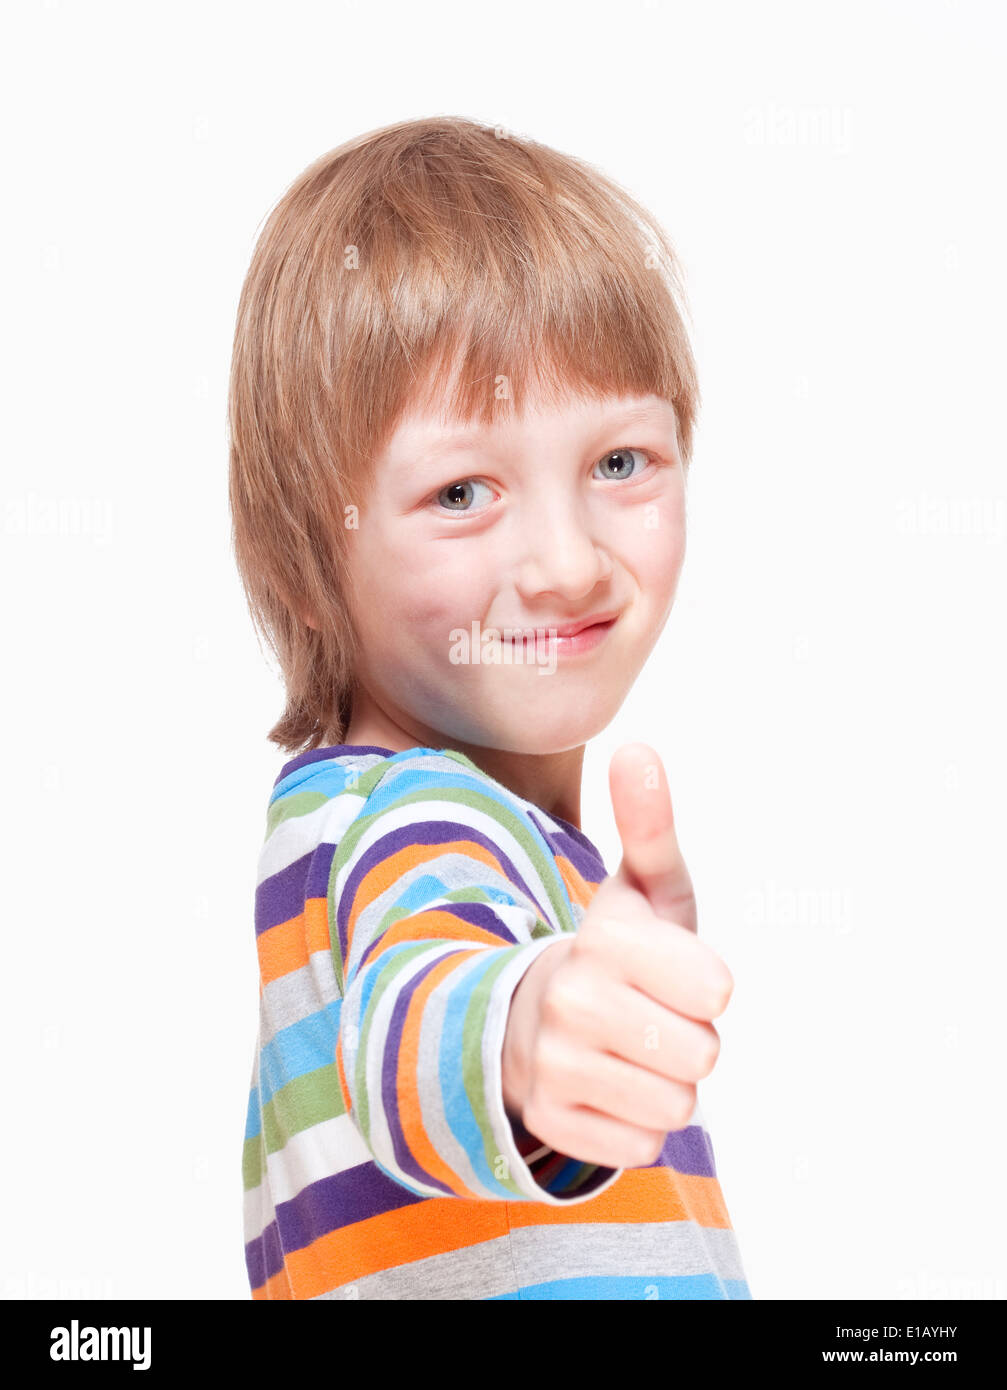 Junge mit blonden Haaren zeigen, Daumen nach oben Handzeichen - Isolated on White Stockfoto